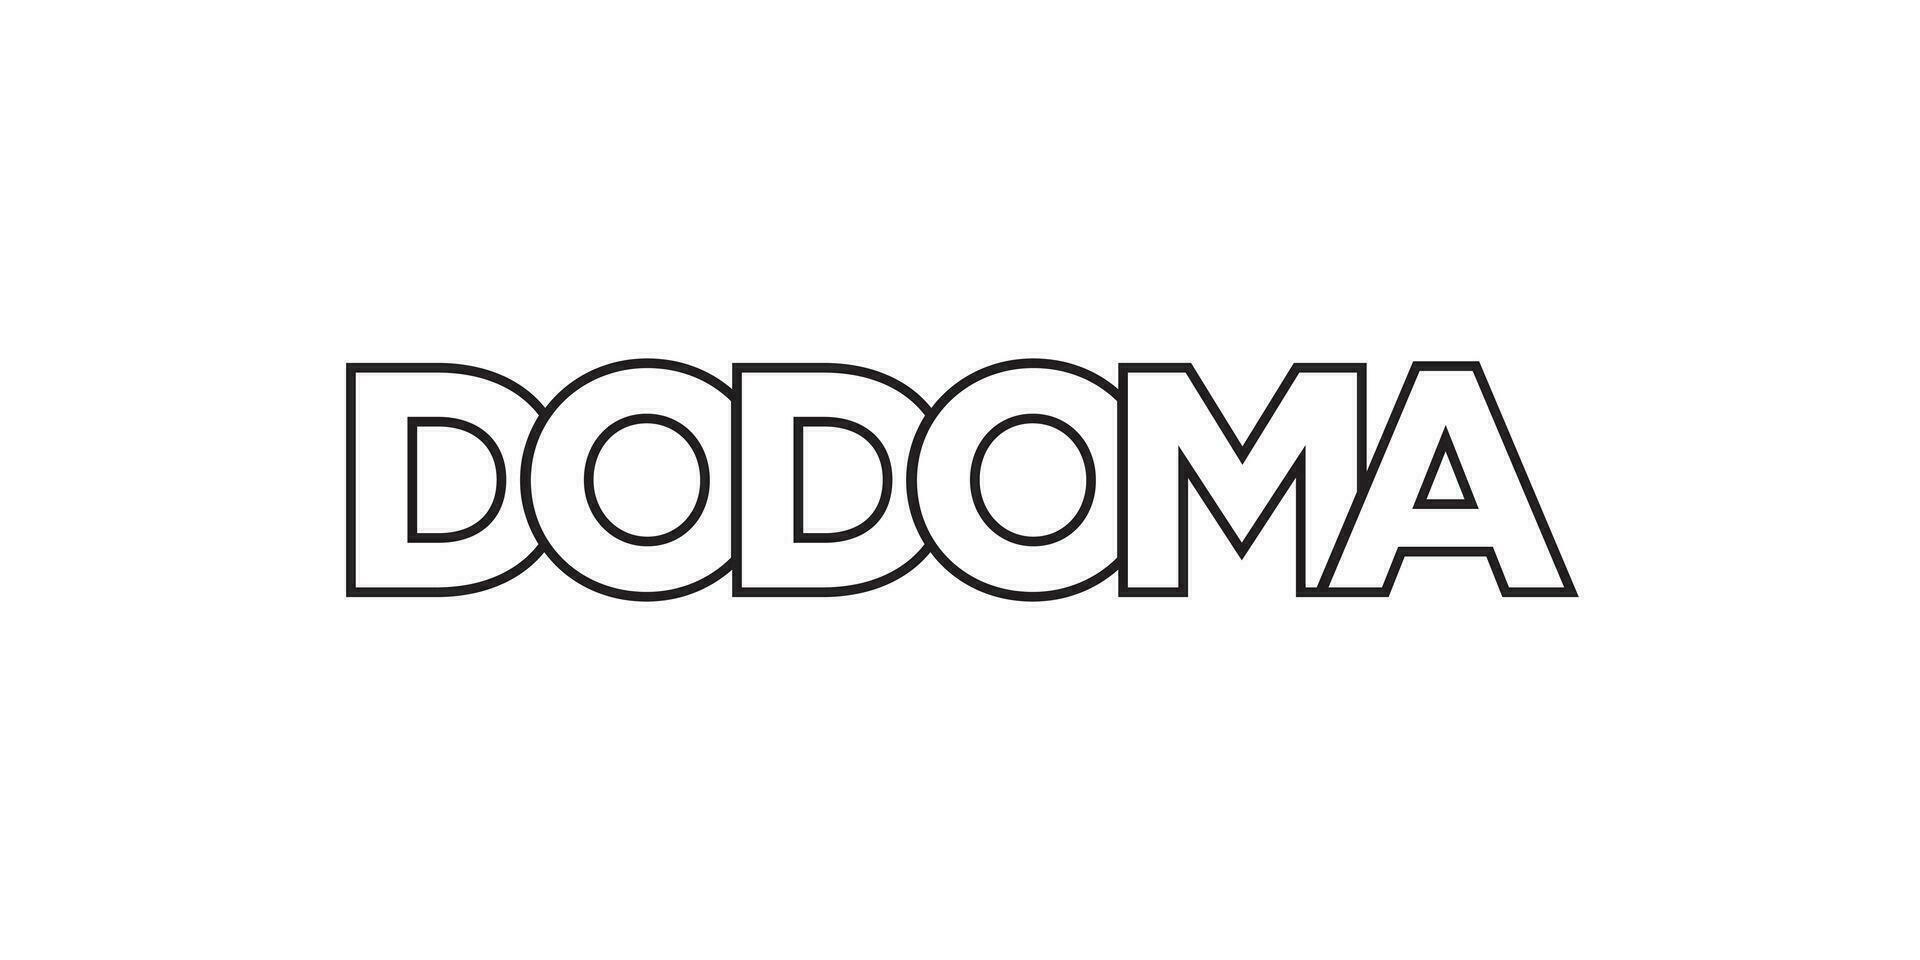 dodoma in de Tanzania embleem. de ontwerp Kenmerken een meetkundig stijl, vector illustratie met stoutmoedig typografie in een modern lettertype. de grafisch leuze belettering.